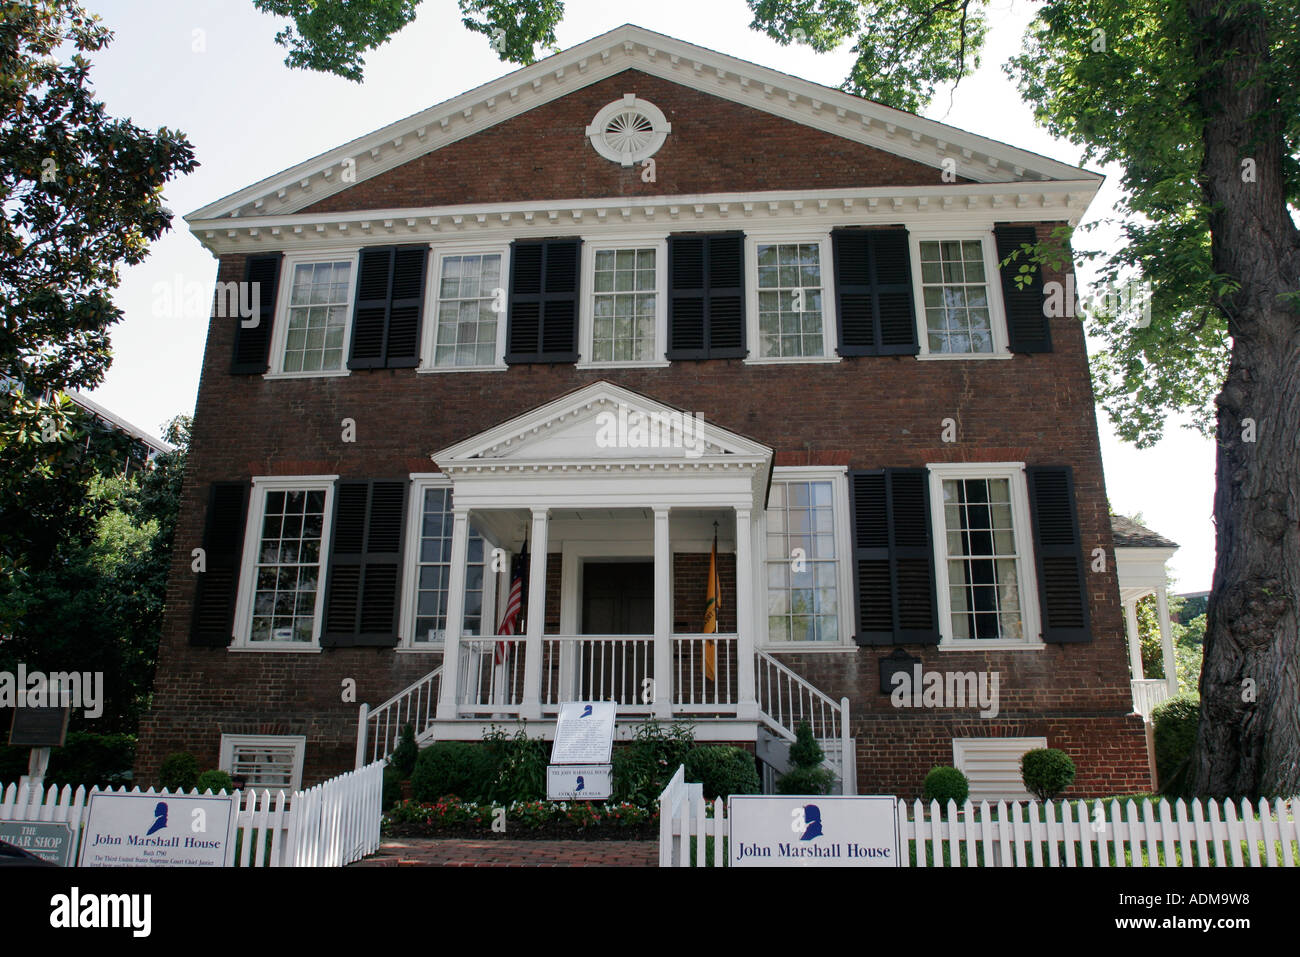 Richmond Virginia, John Marshall casa, case, costruito, costruito 1790, stile federalista, Corte Suprema capo Giustizia, VA060518025 Foto Stock